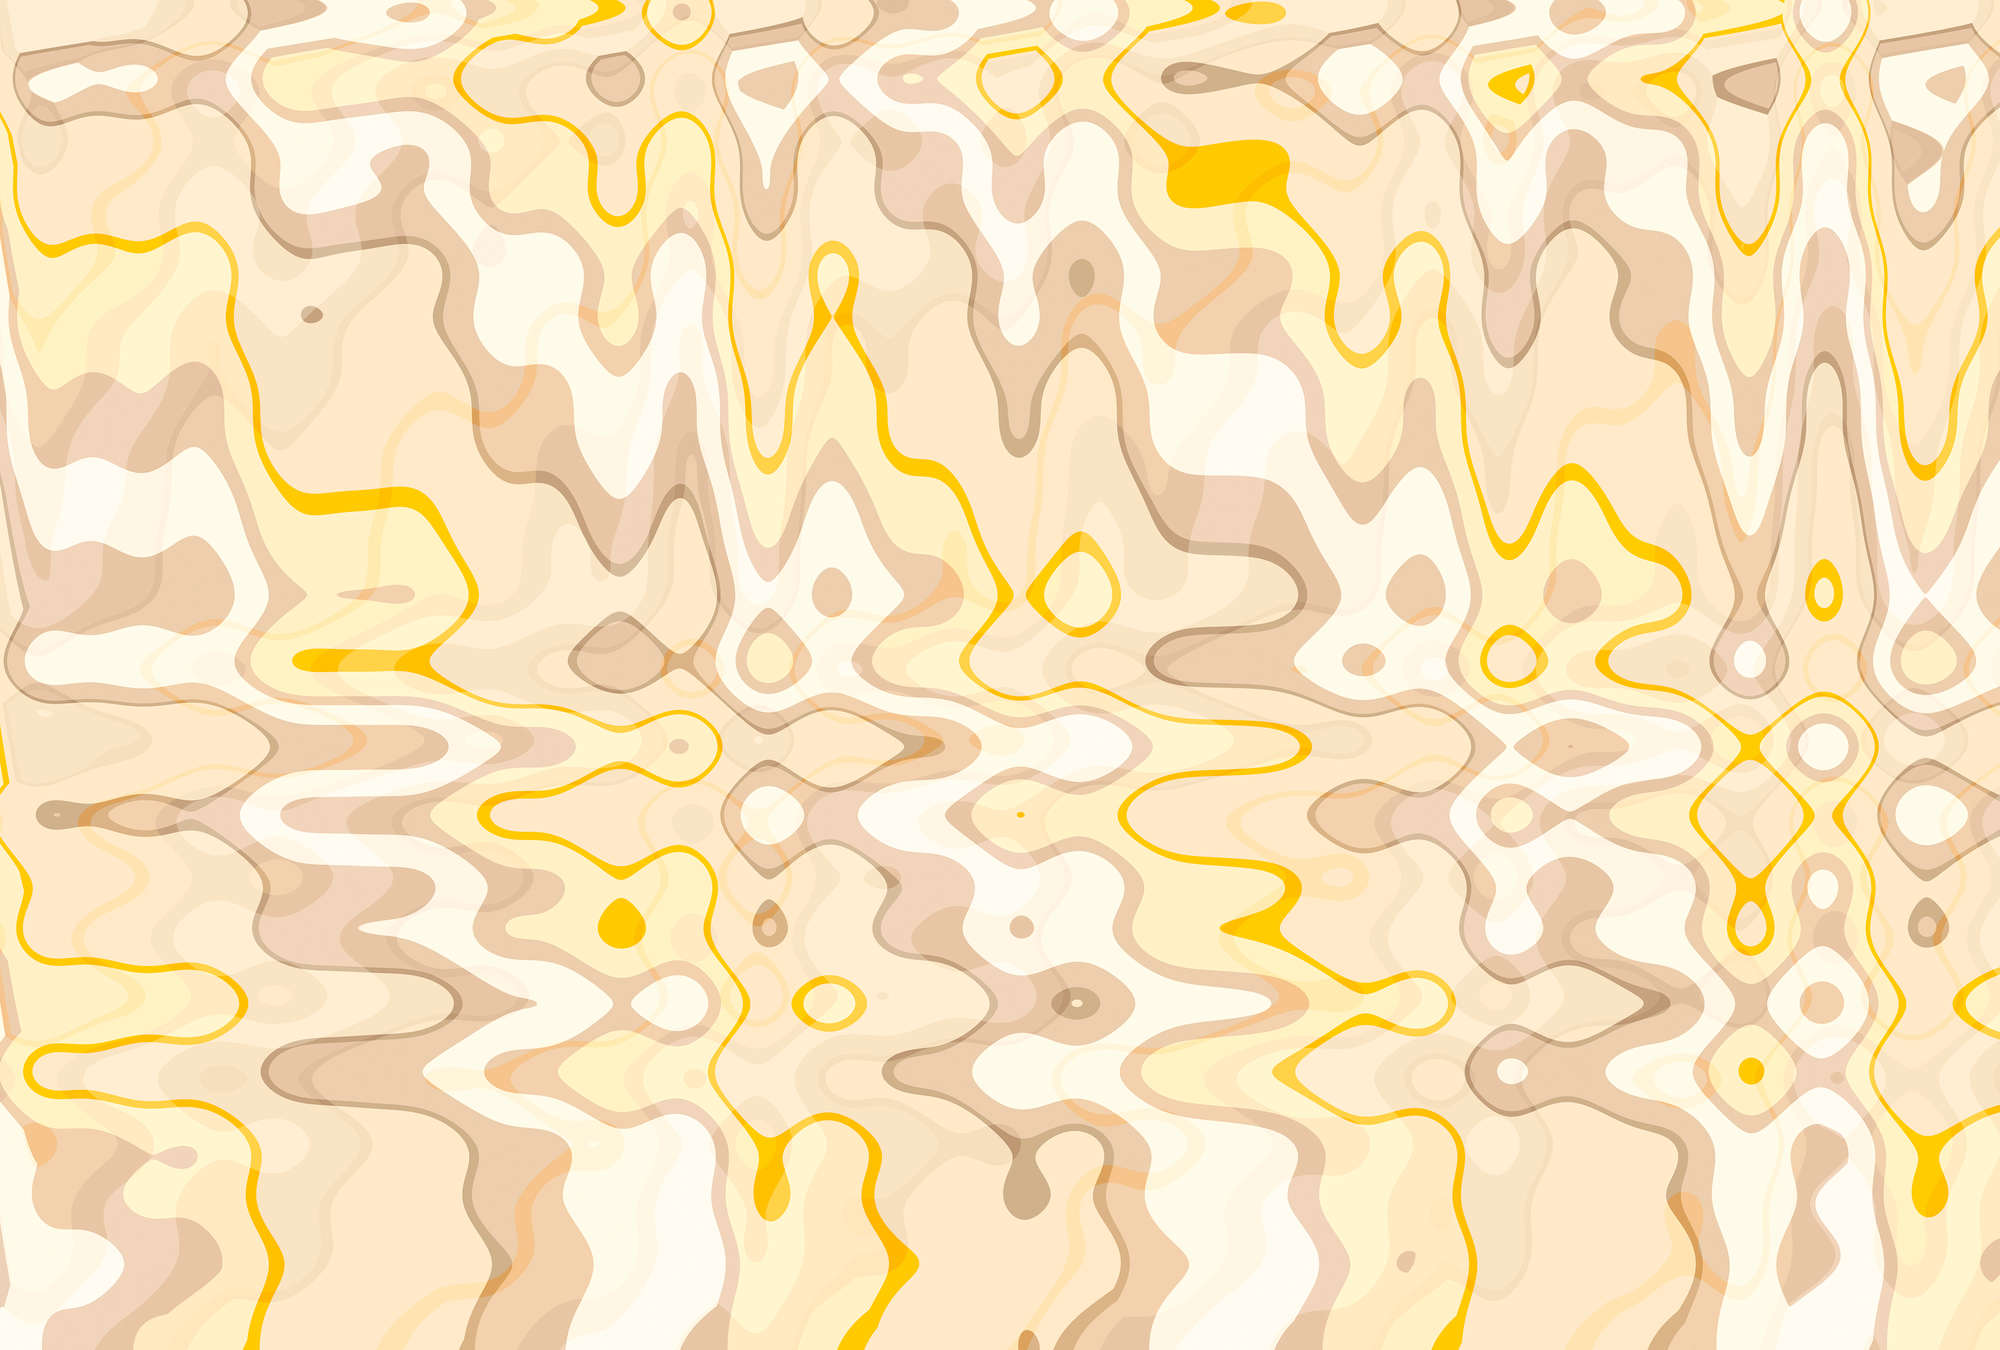             Papier peint au design abstrait et aux vibrations rétro - jaune, marron, blanc
        